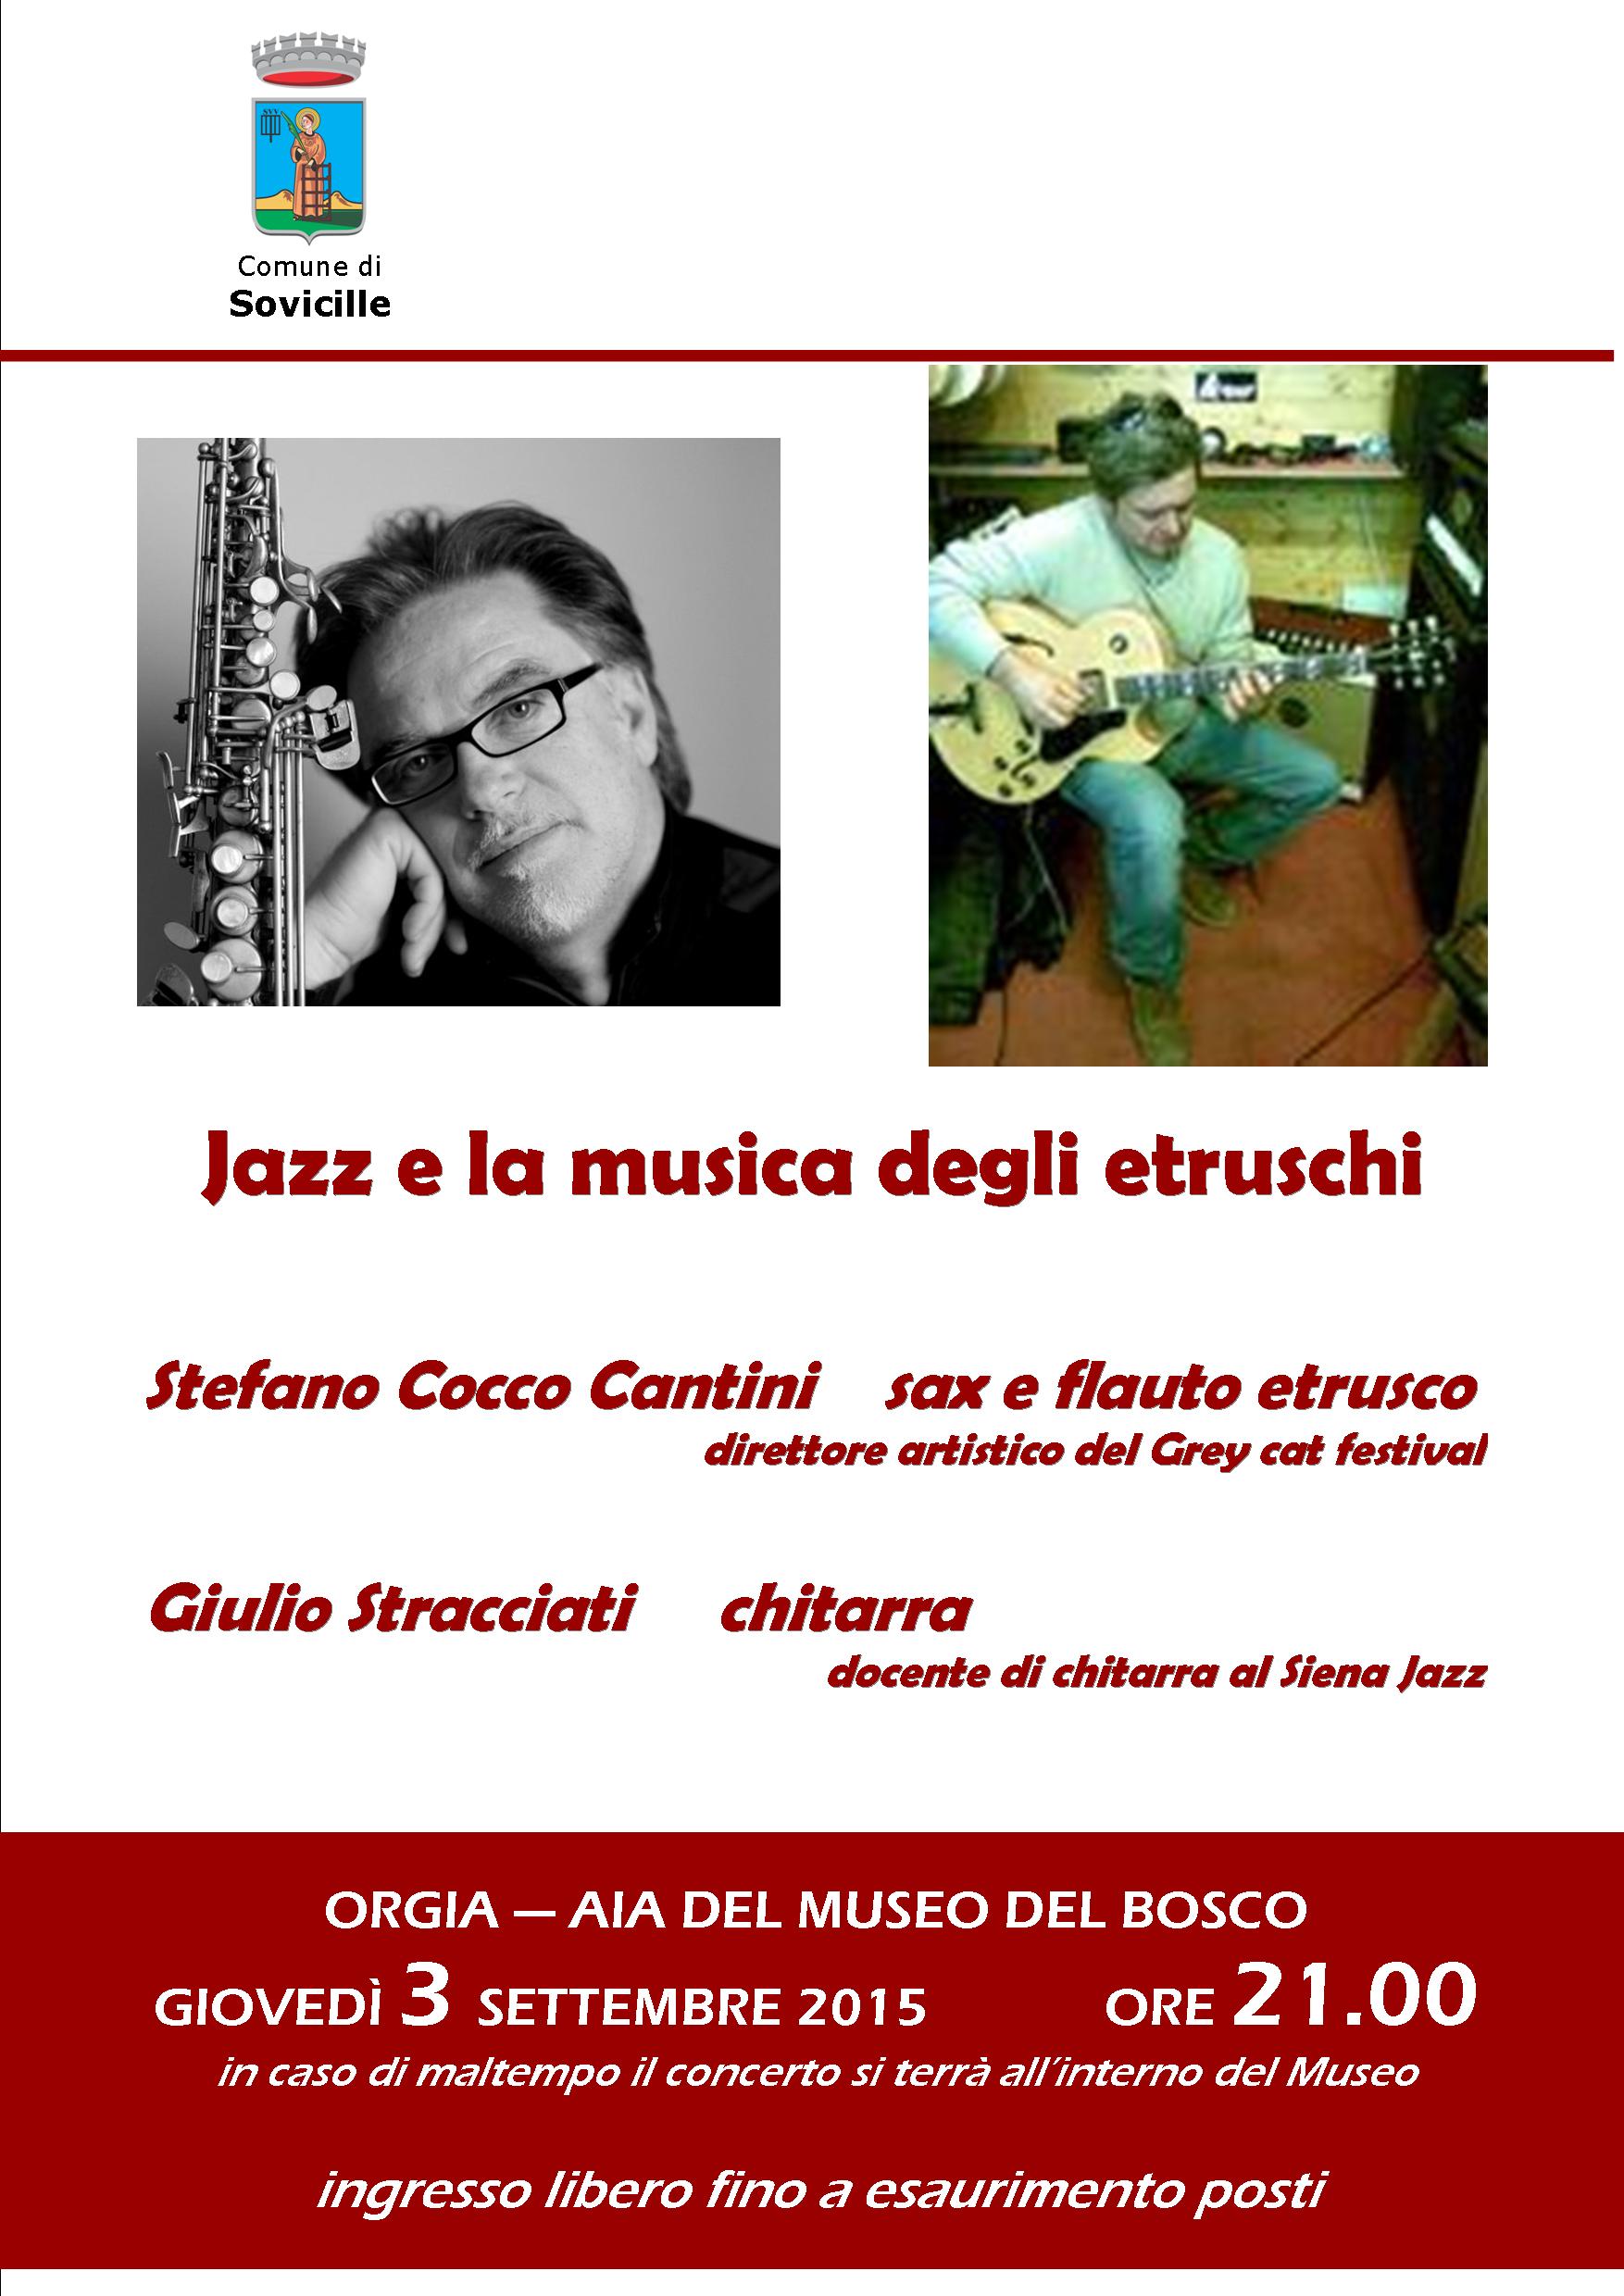 Al Museo del Bosco di Orgia il jazz e la musica degli etruschi